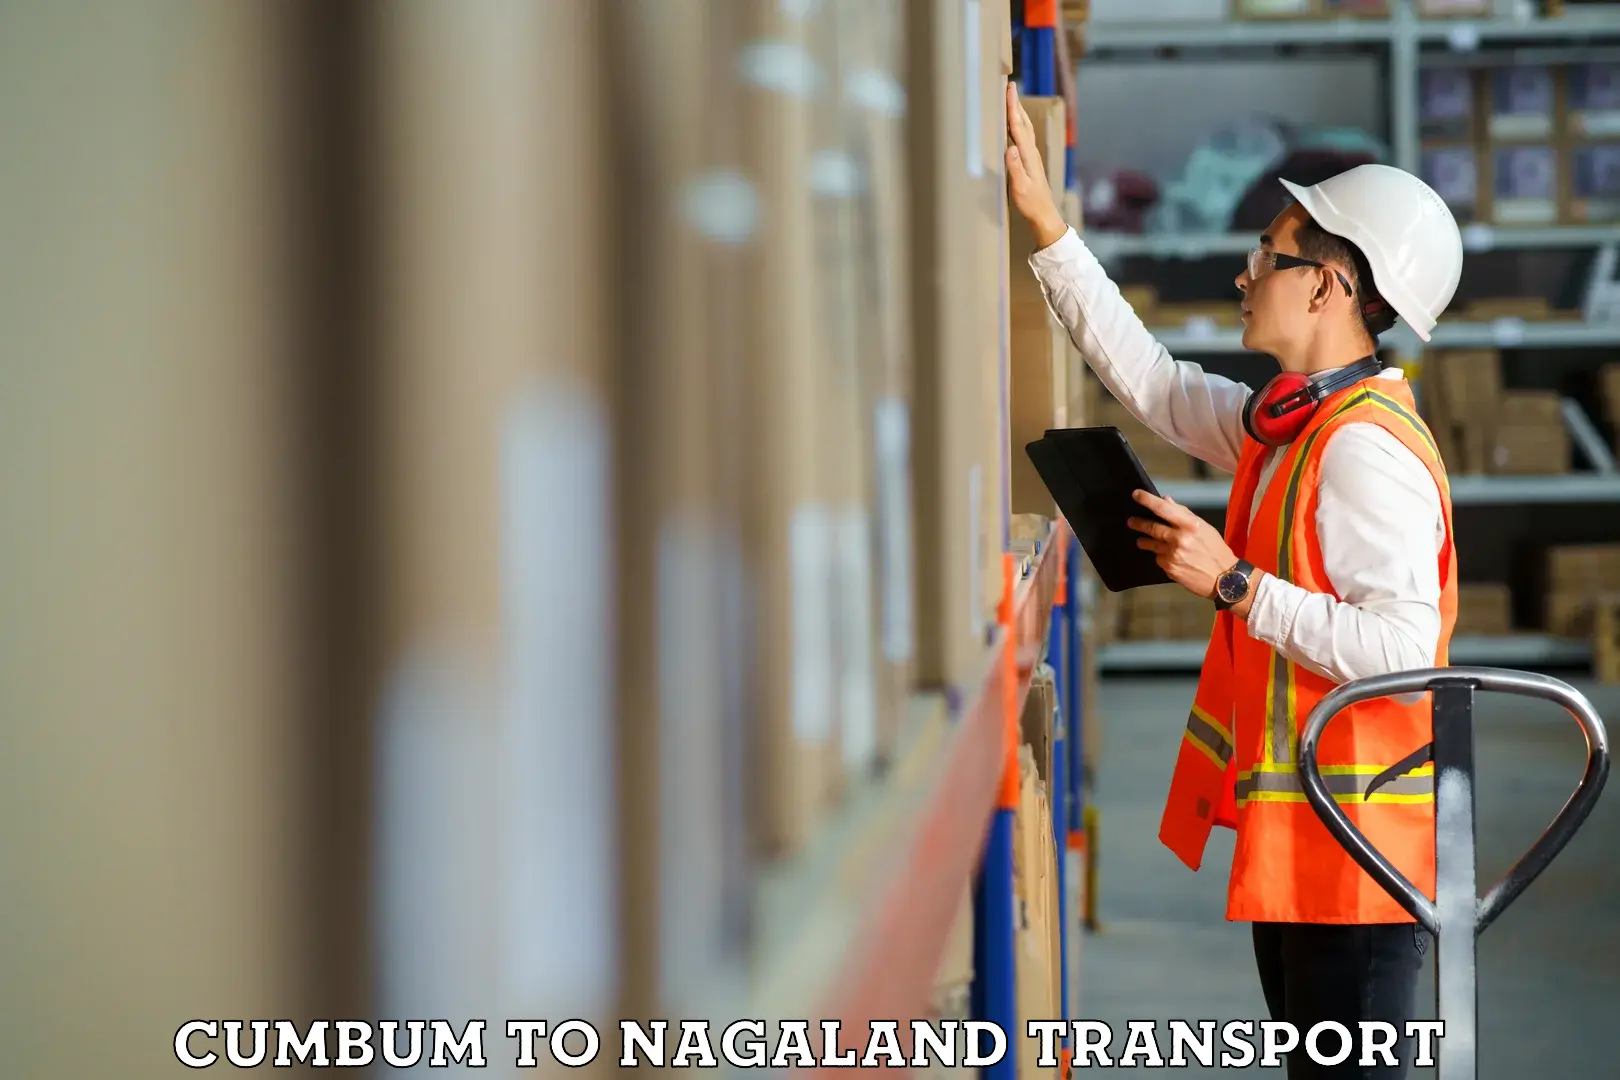 Furniture transport service Cumbum to Nagaland